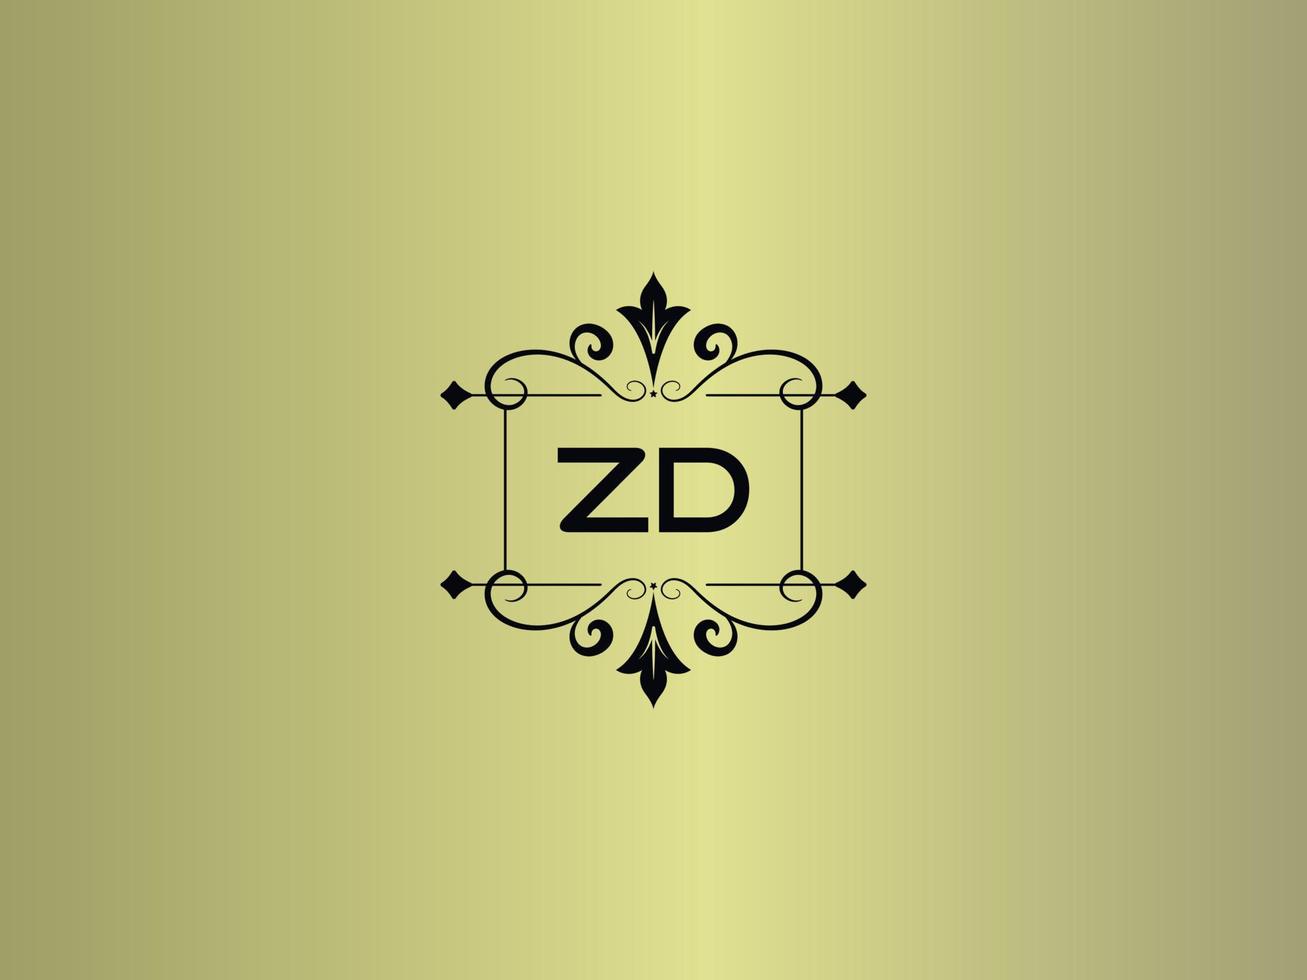 imagem criativa do logotipo zd, design de carta de luxo zd premium vetor